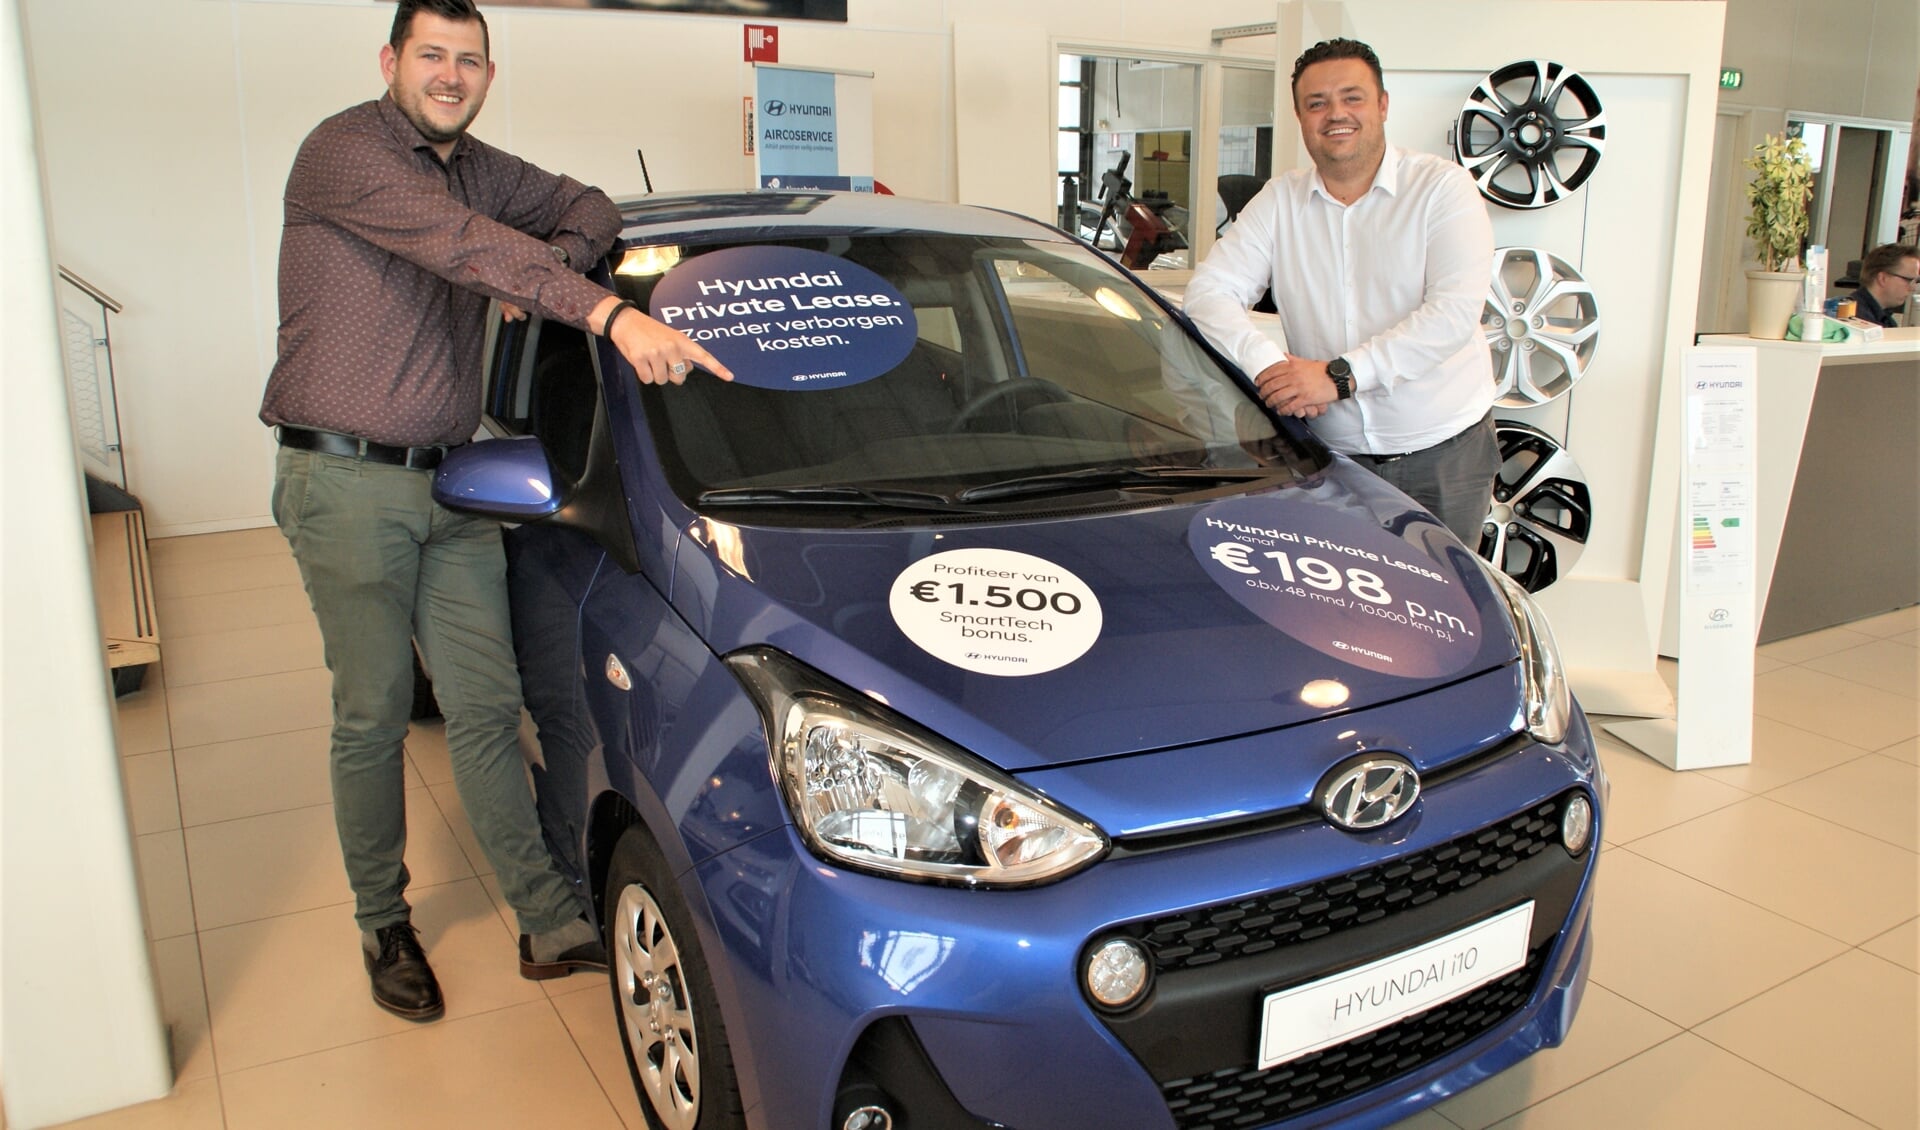 De verkoopadviseurs Didier van Unen (links) en Mike Arends bij de Hyundai i10 met SmartTech Bonus.